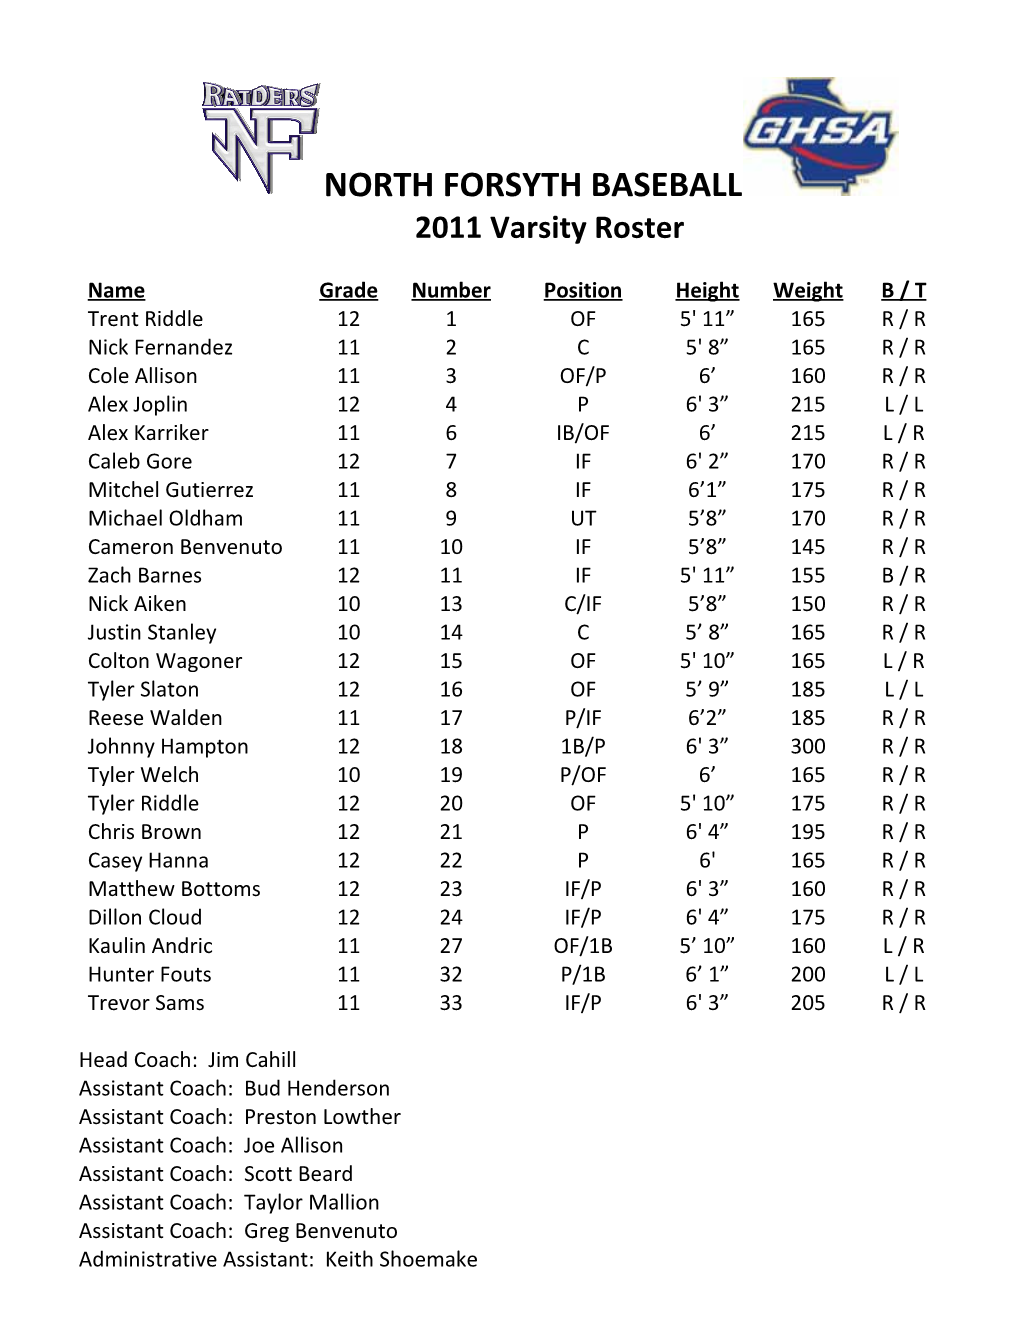 North Forsyth Varsity Baseball